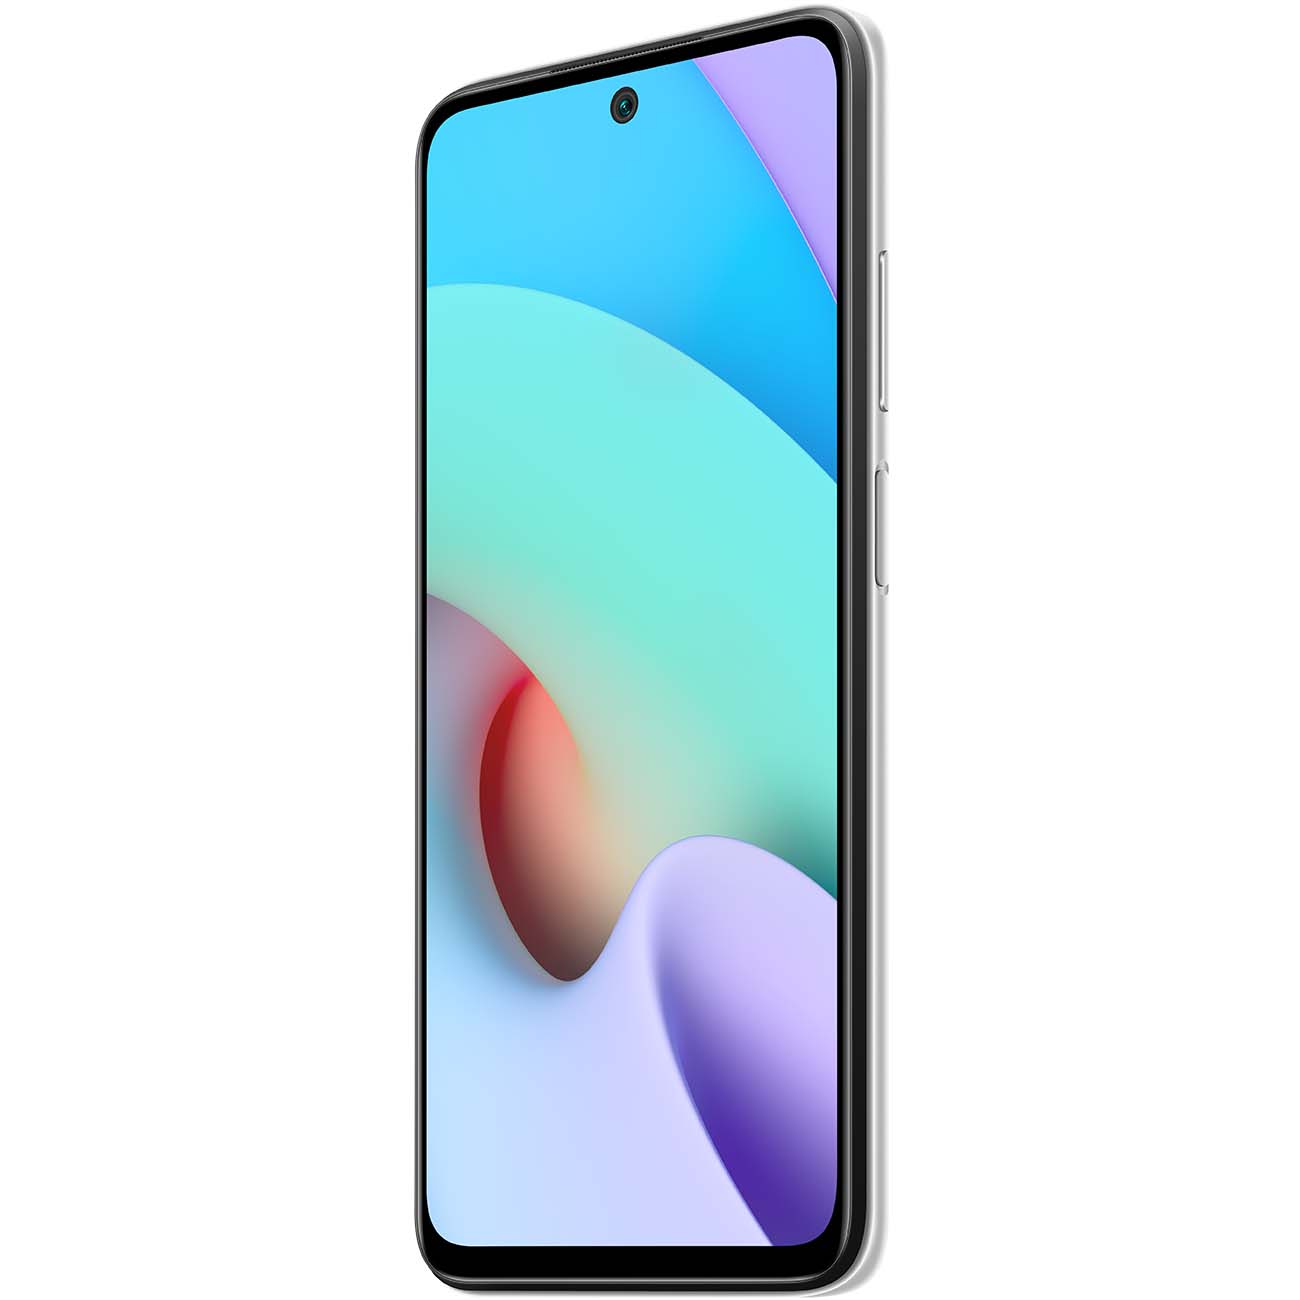 Купить смартфон xiaomi redmi 10 4+128gb pebble white Смартфоны в официальном магазине Apple, Samsung, Xiaomi. iPixel.ru Купить, заказ, кредит, рассрочка, отзывы,  характеристики, цена,  фотографии, в подарок.